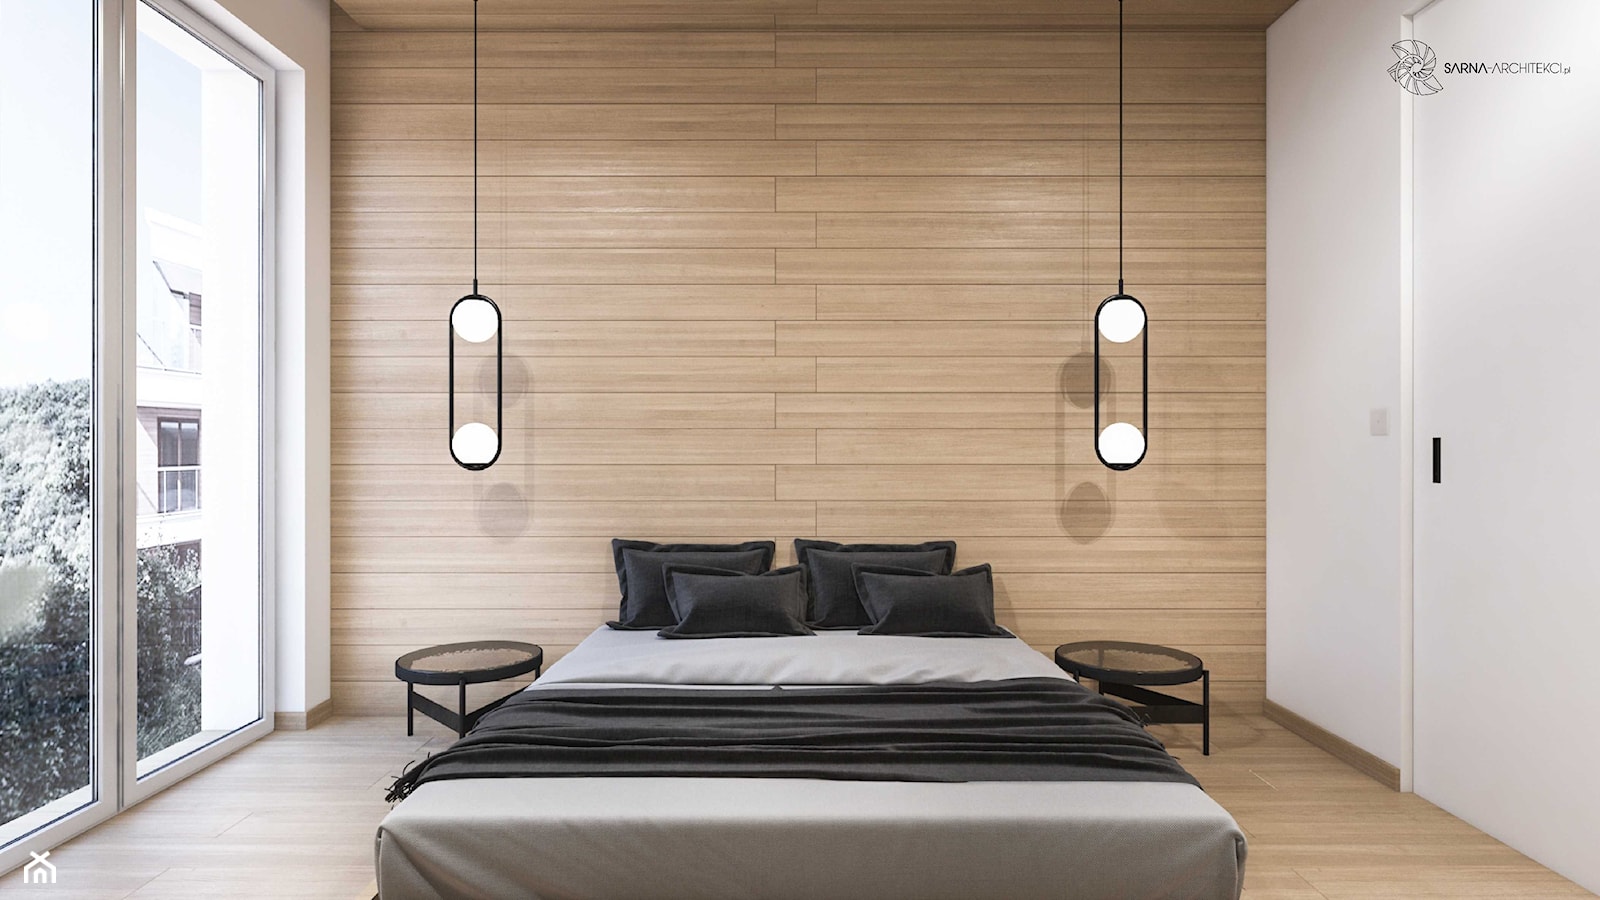 MInimalistyczna prosta sypialnia: drewno i łóżko - zdjęcie od SARNA ARCHITEKCI / Architektura Wnętrza dla wymagających / Interior Design - Homebook